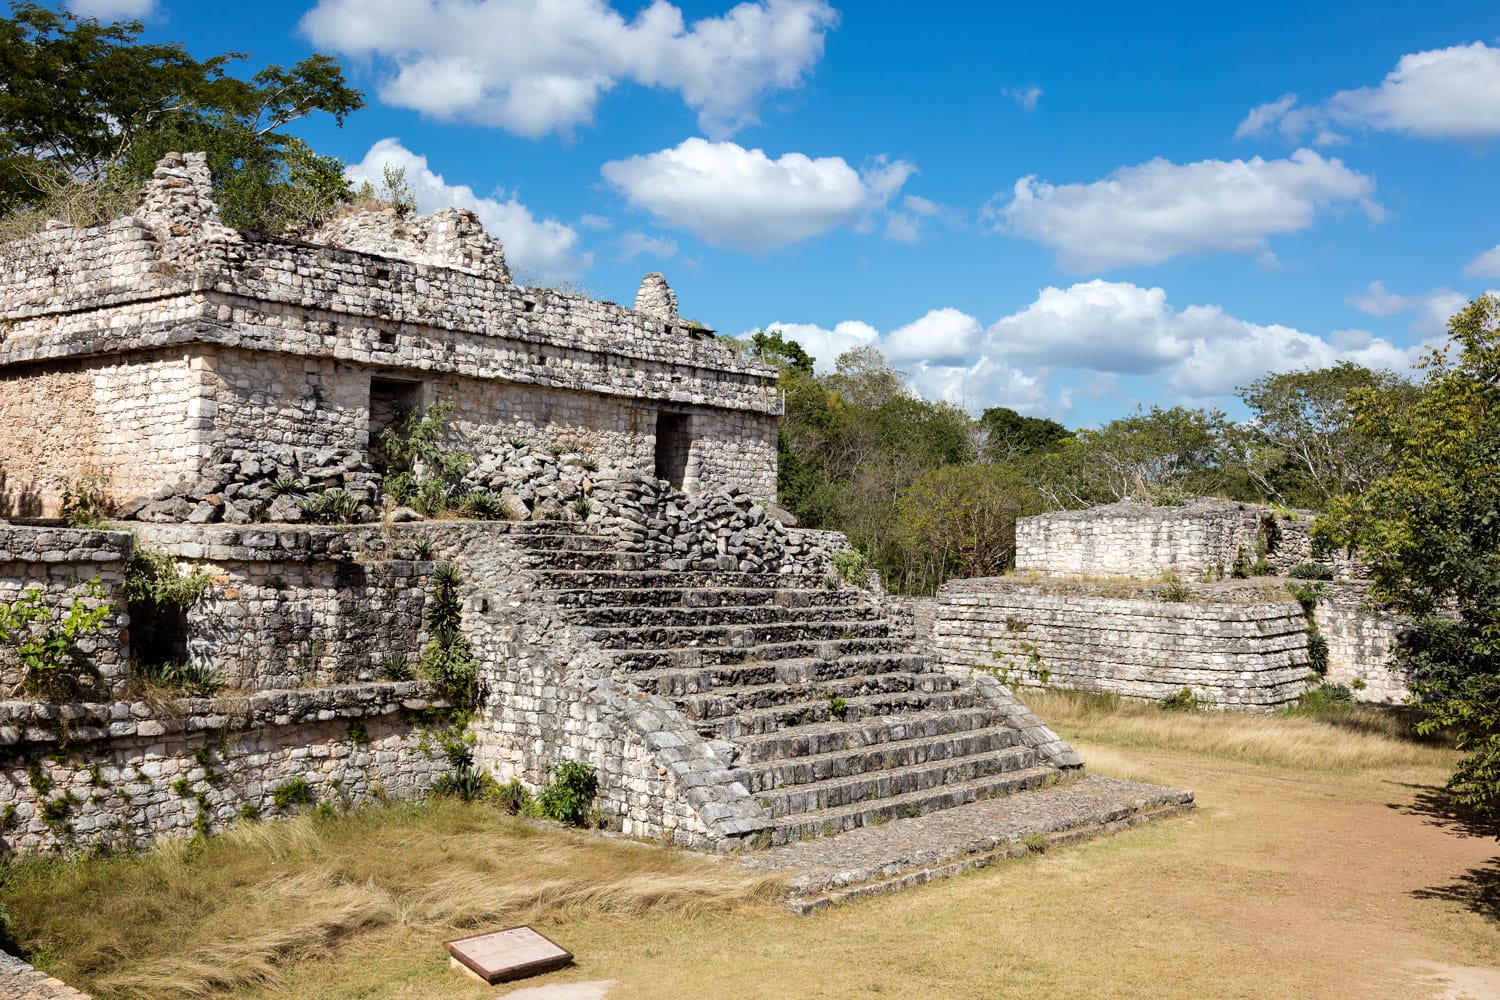 Ruins of the ancient Mayan temple in Ek Balama in Temozon, Yucatan, Mexico